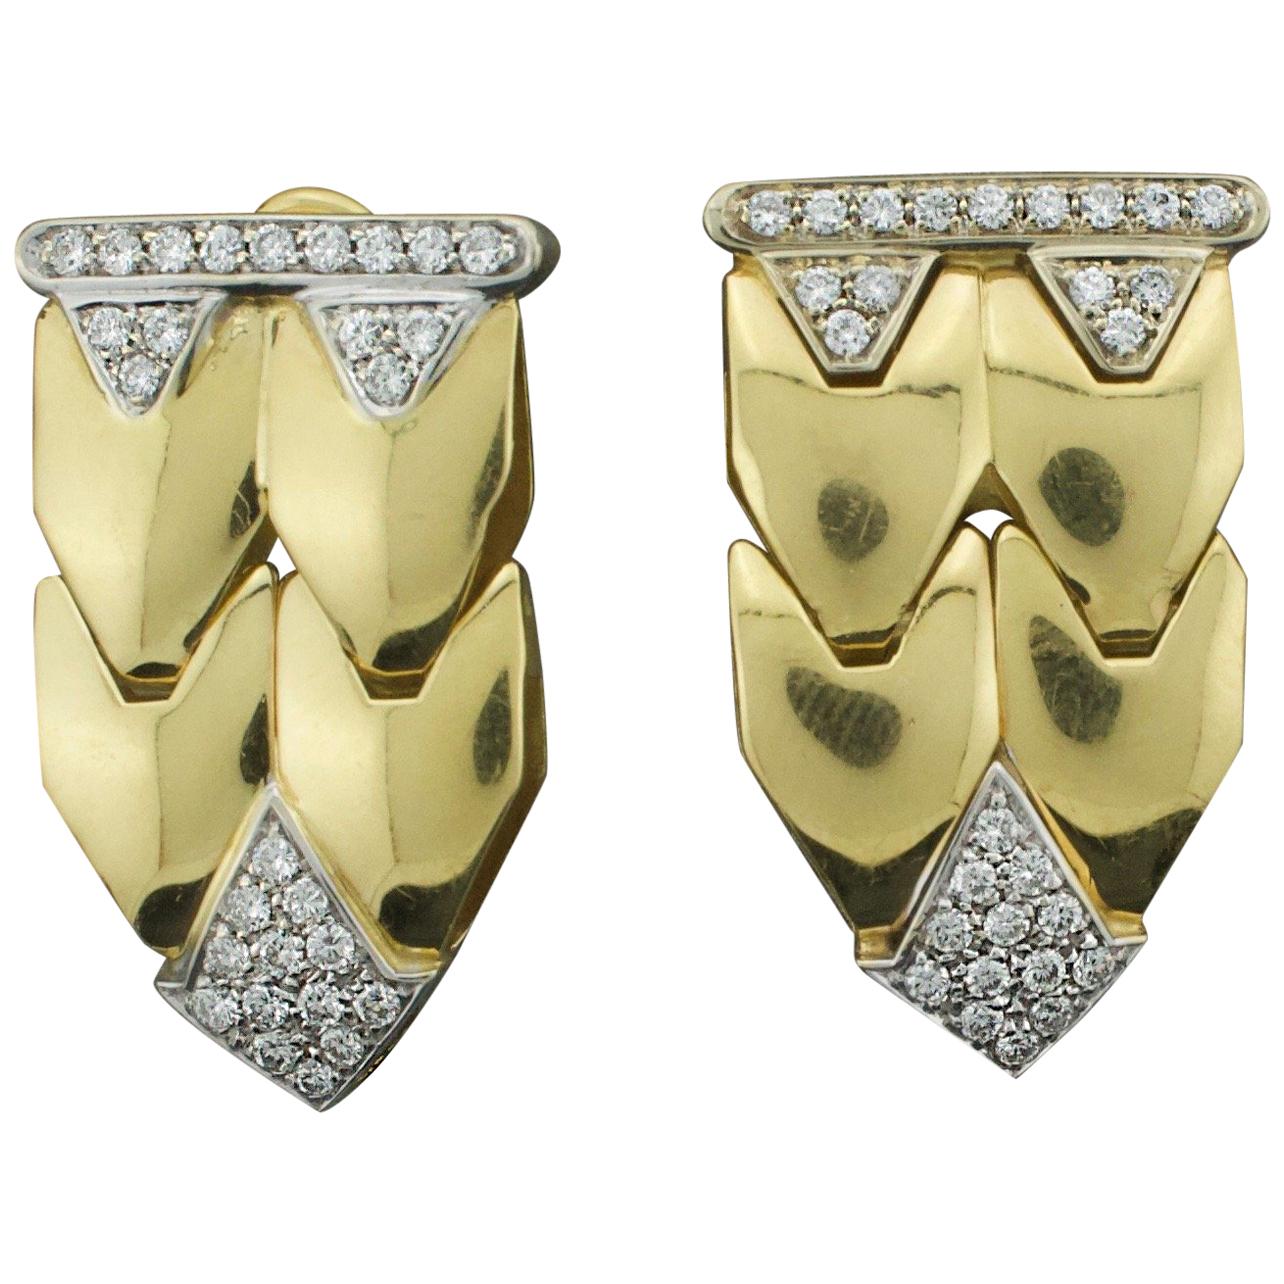 Italian Flexible Diamond Earrings in 18 Karat 1.00 Carat Total